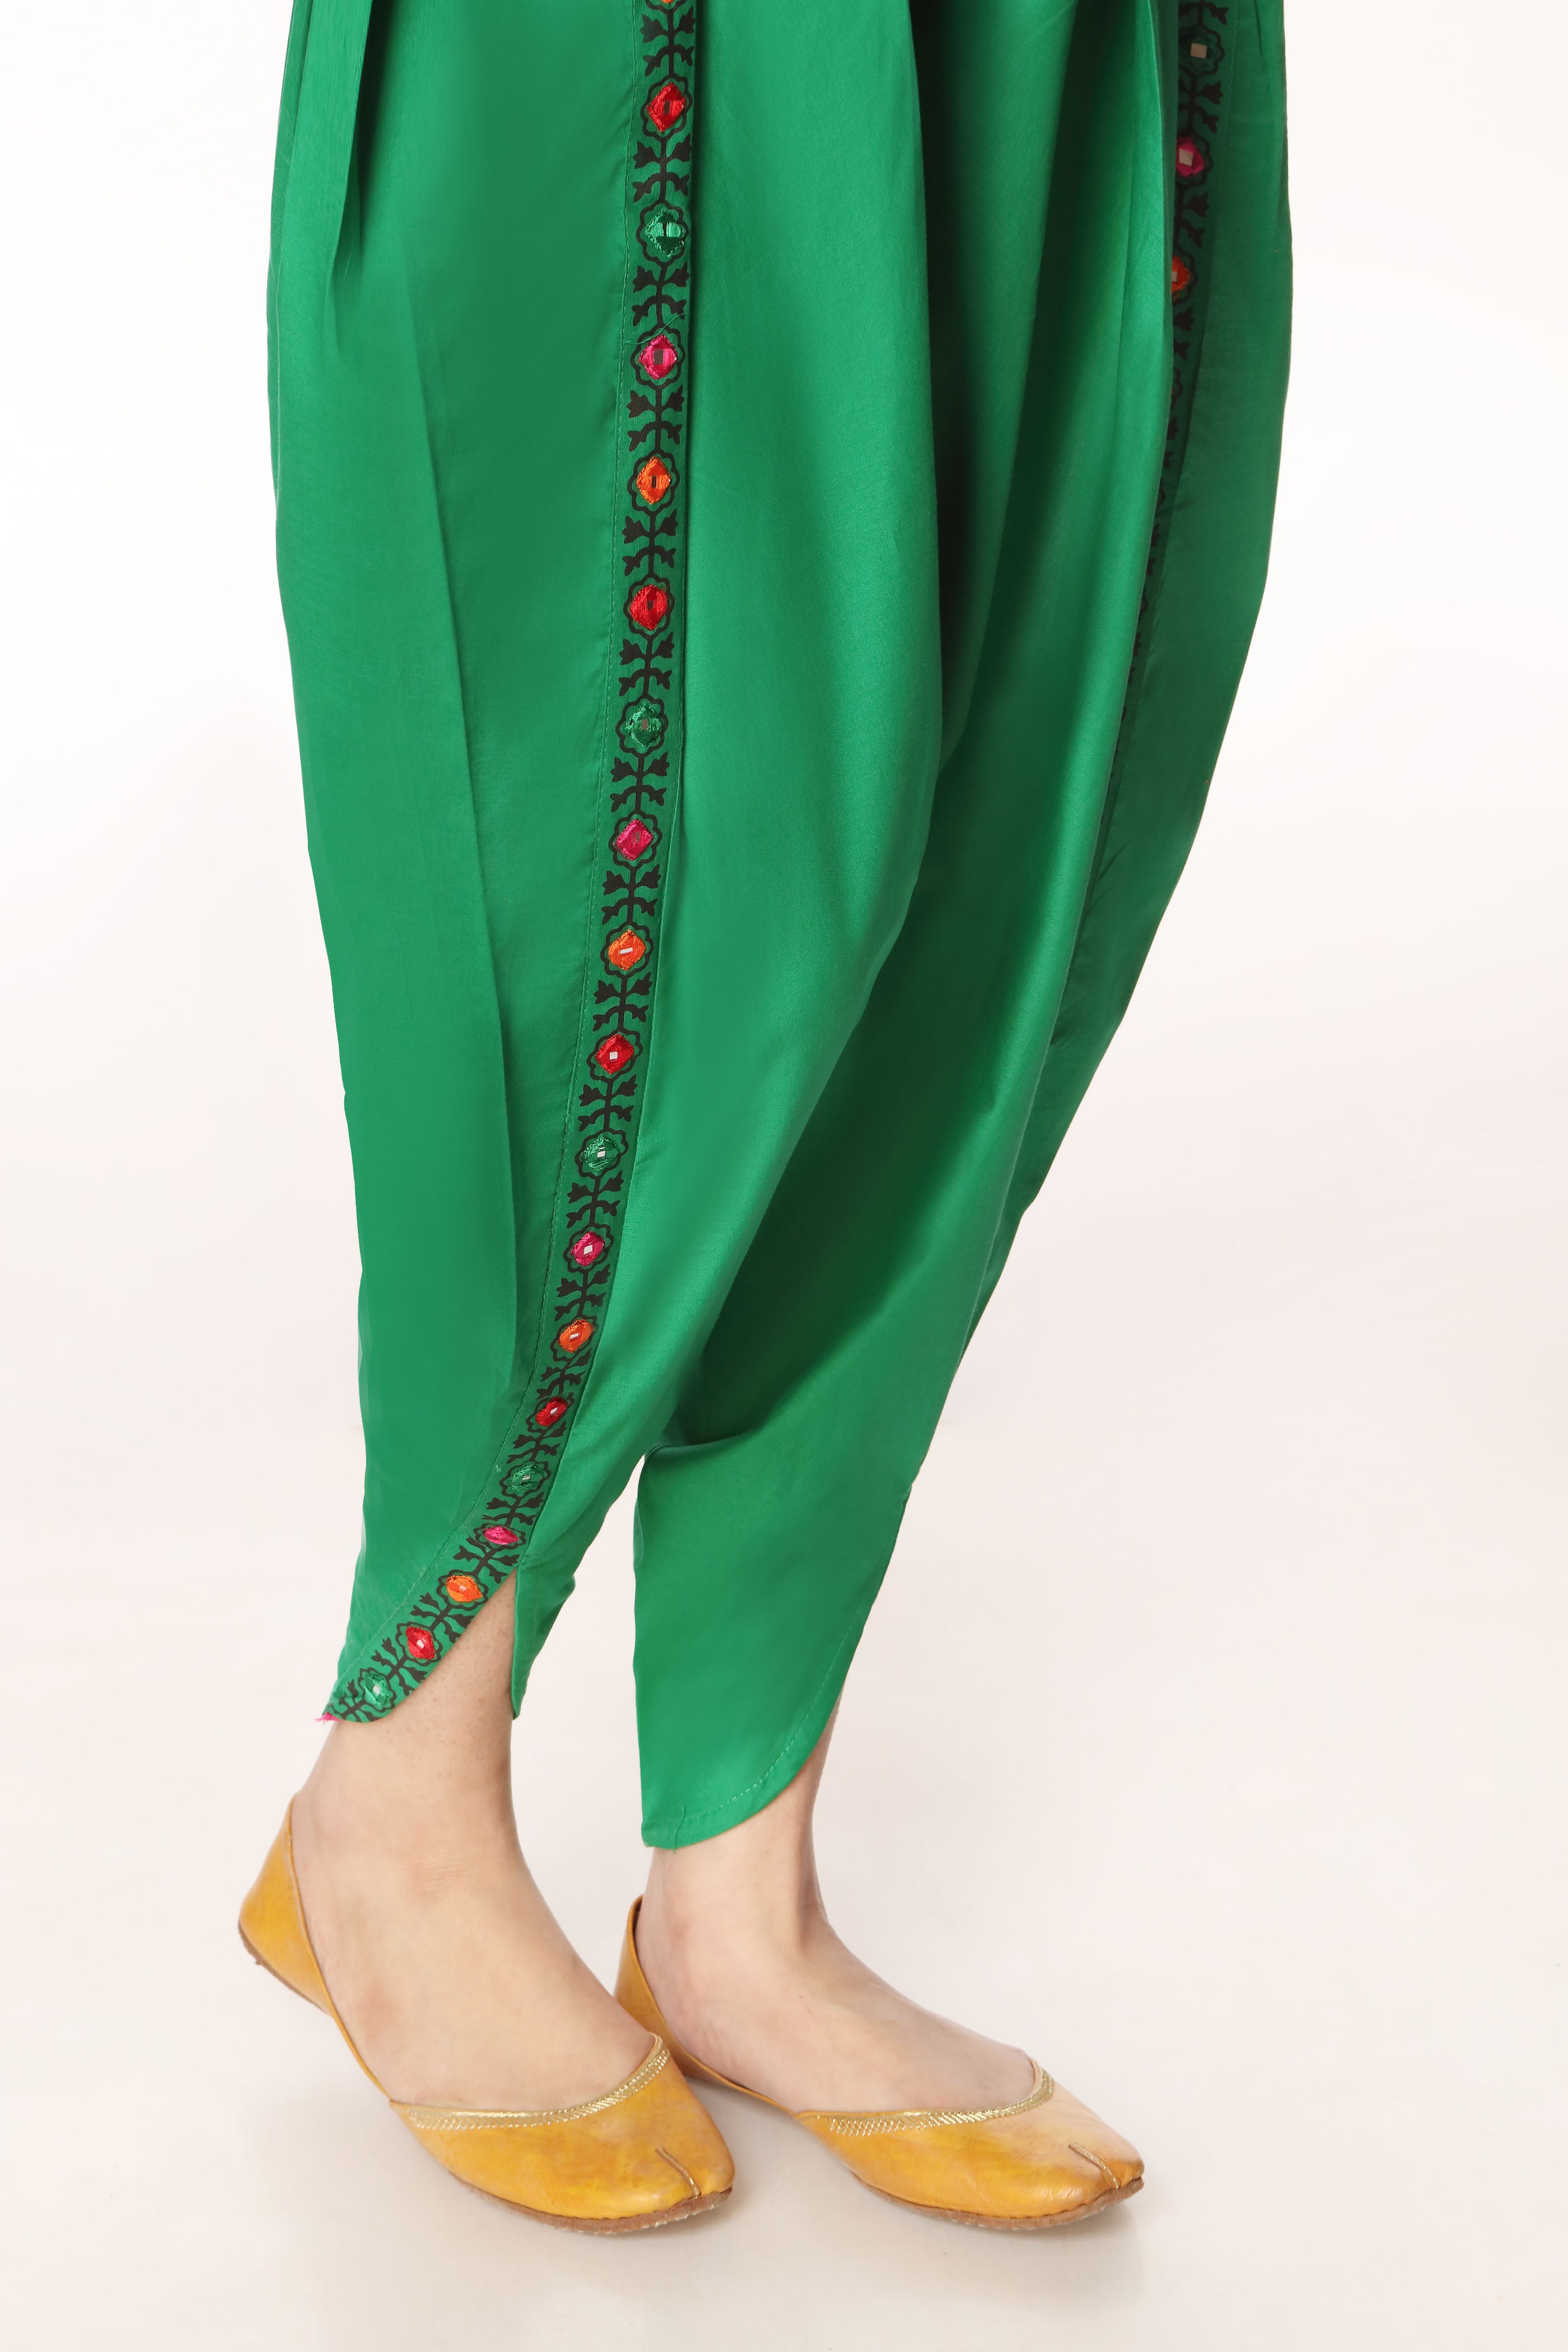 Tulip Sheesha in Green coloured Printed Lawn fabric 3